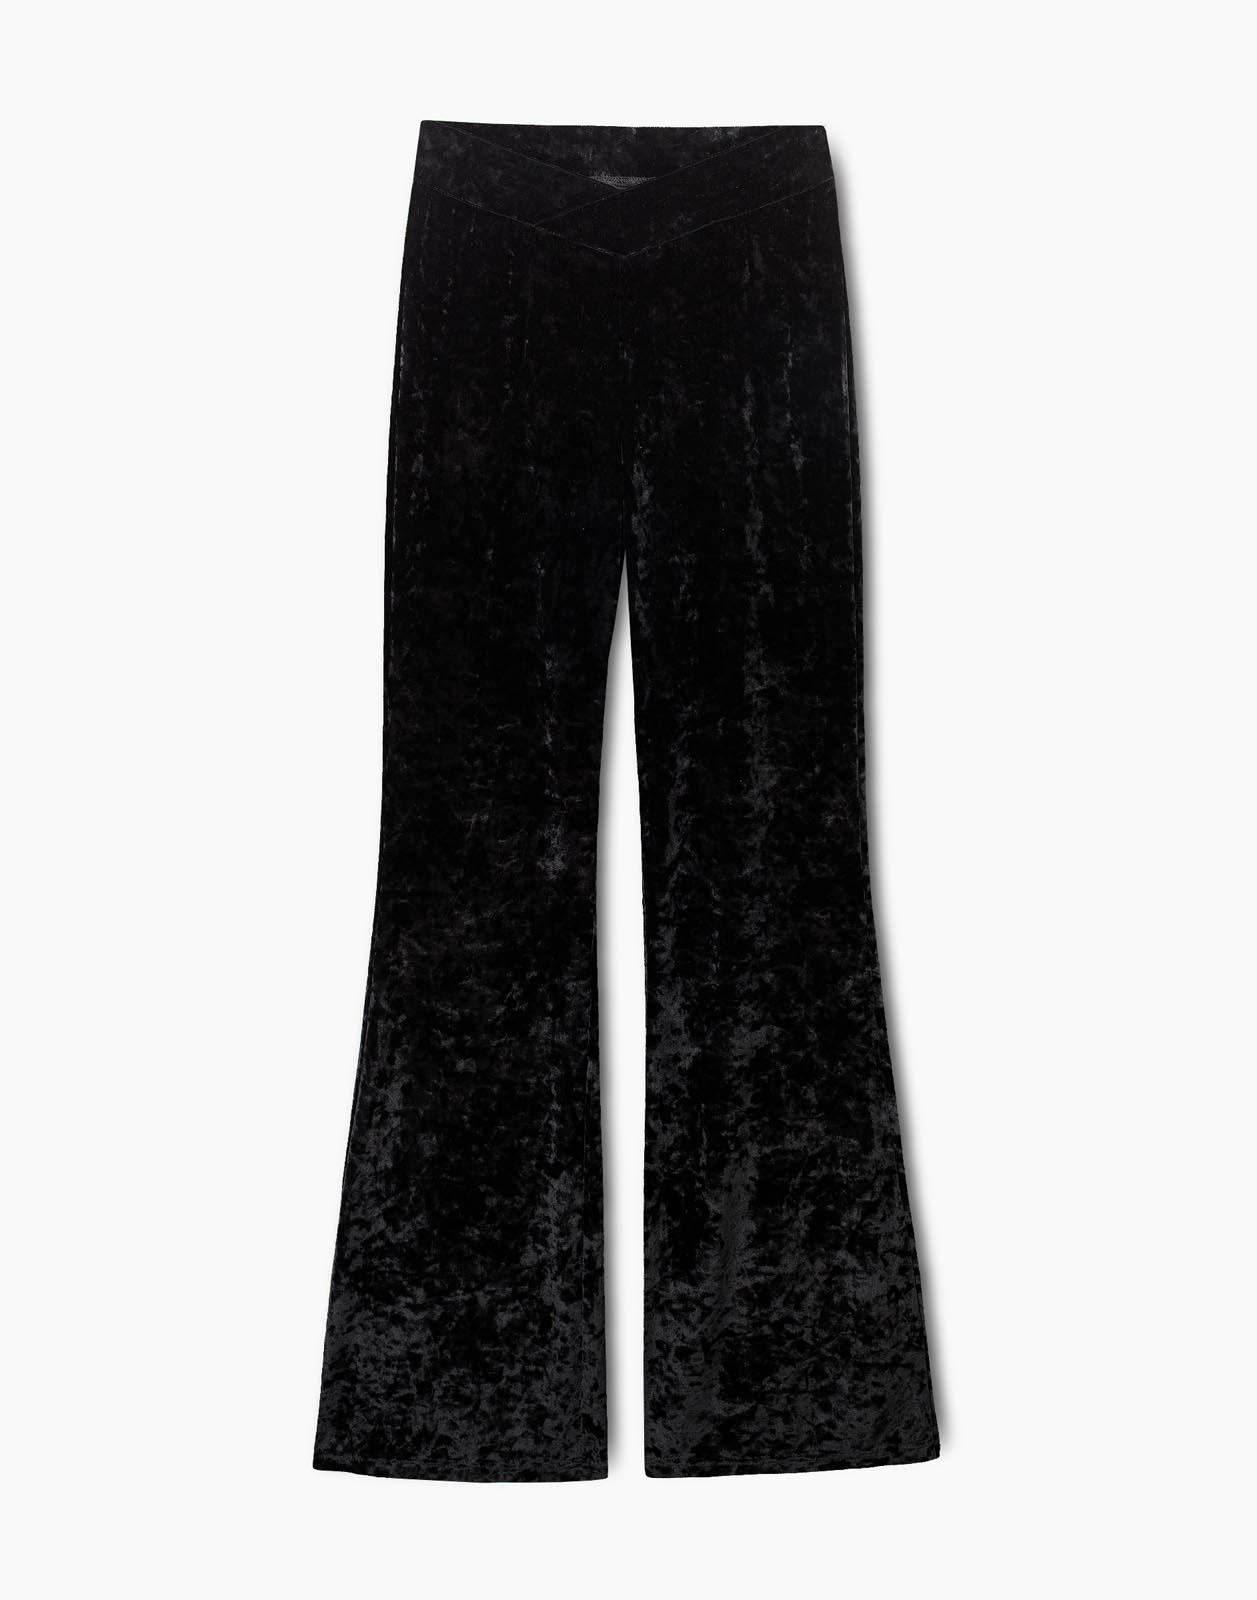 Леггинсы женские Gloria Jeans GHS009073 черные S/164 (42)